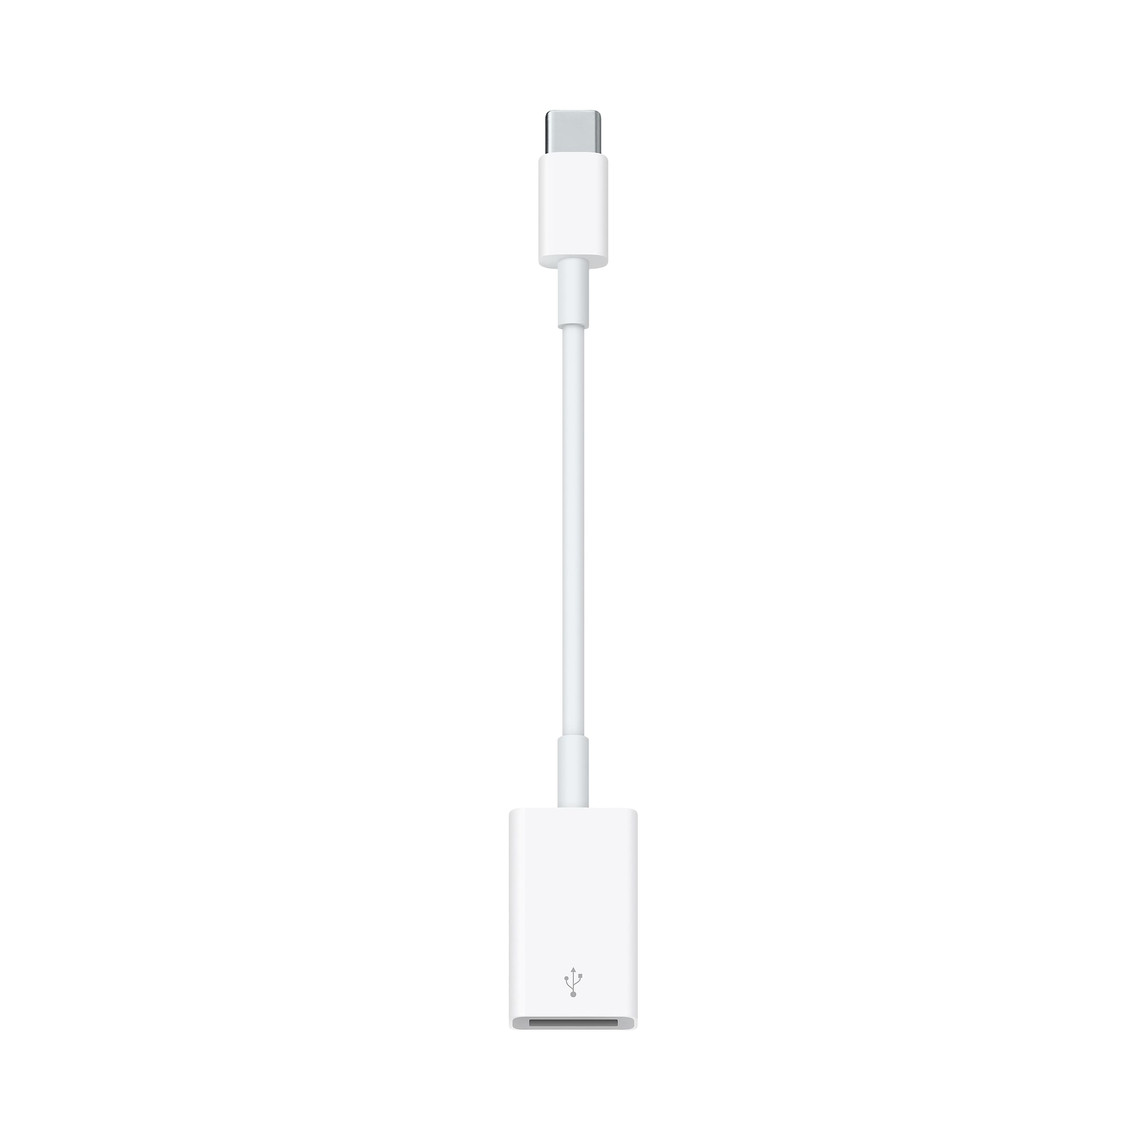 L’adaptateur USB-C vers USB vous permet de connecter des appareils iOS et des accessoires USB standards à un Mac doté de ports USB-C ou Thunderbolt 3 (USB-C).